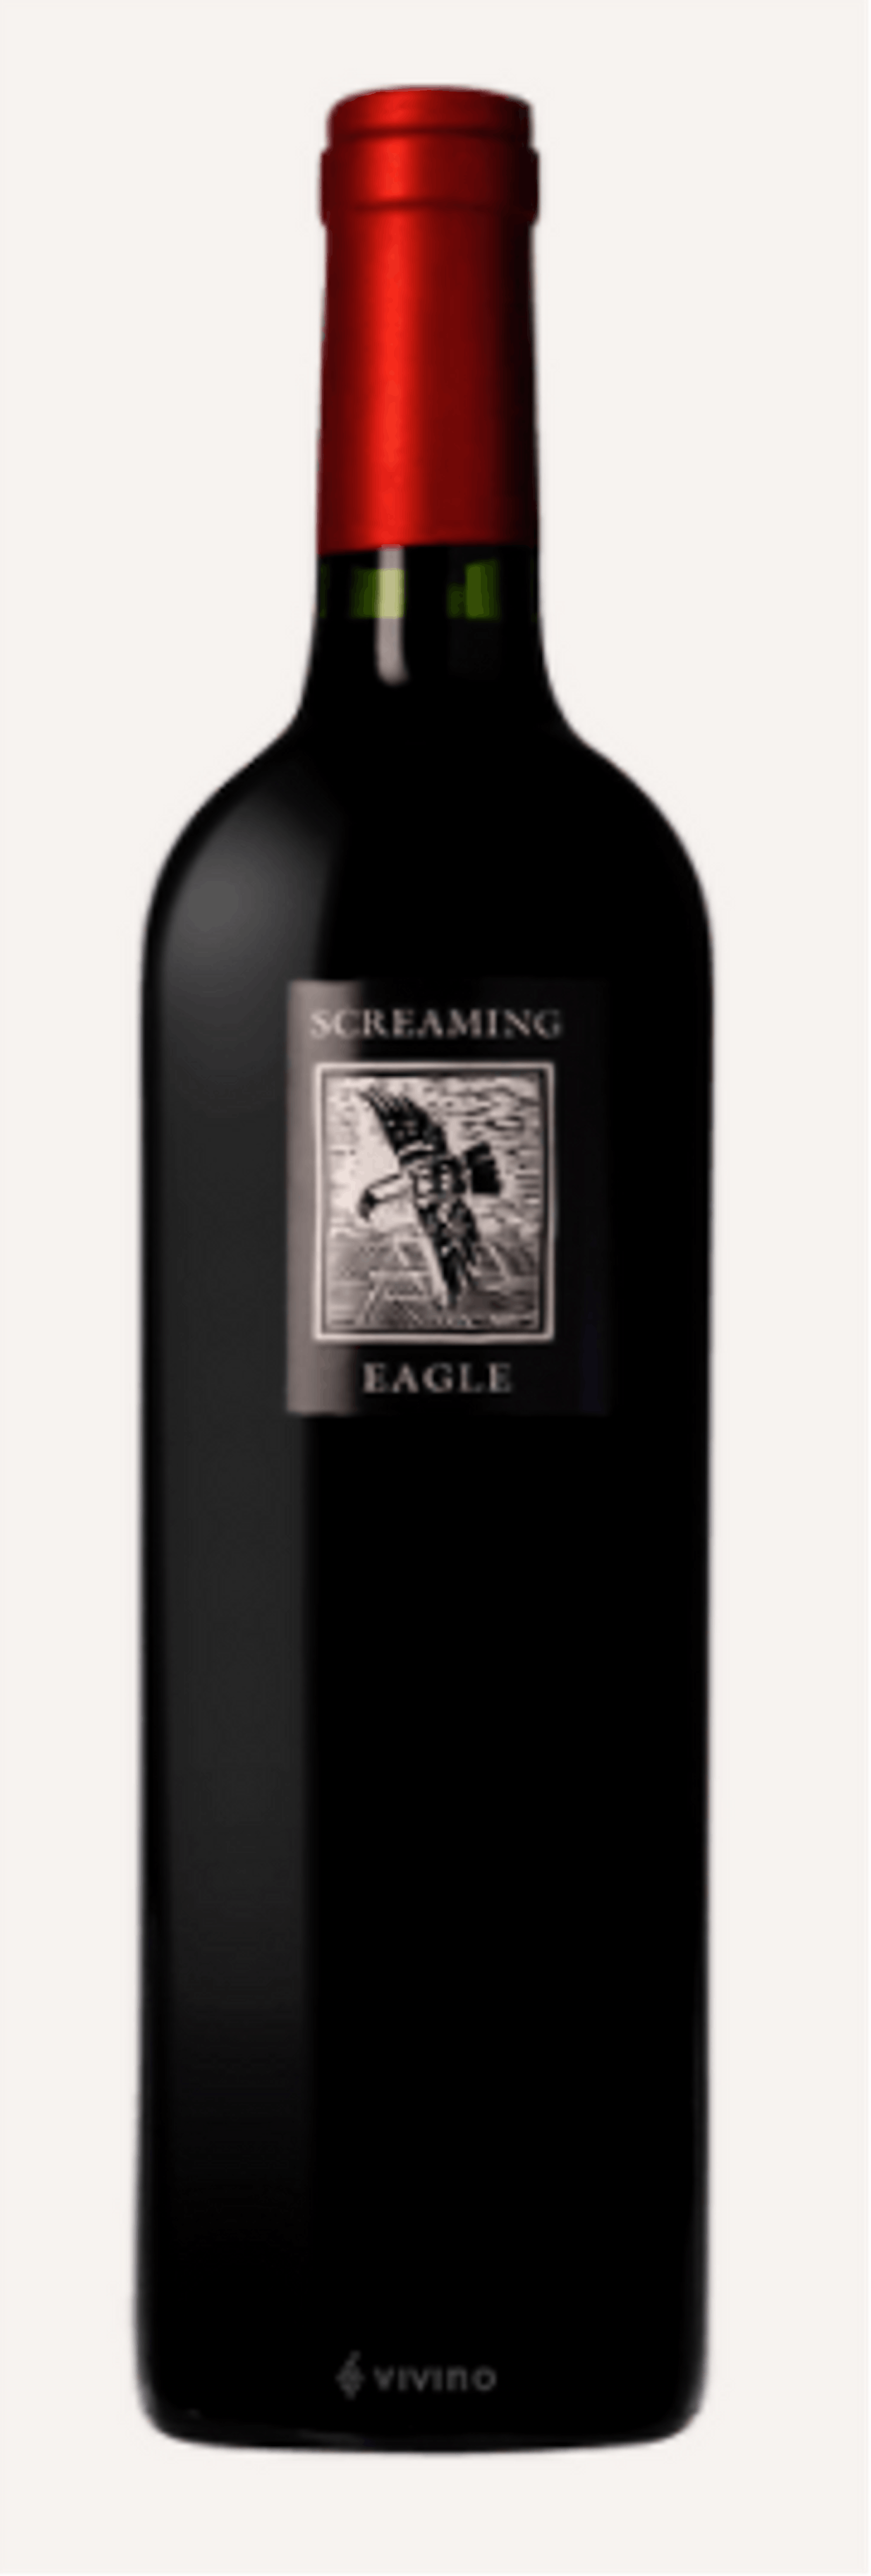 <strong>Platz 1 Screaming Eagle Cabernet Sauvignon 1992:</strong> US-Schauspieler Chase Bailey kaufte diesen Wein im Jahr 2000 auf einer Auktion um <strong>438.000 Euro</strong>. Damit hätte er beinahe den teuersten Wein der Welt in seiner Sammlung. Aber eben nur fast: Da es sich um eine Wohltätigkeitsauktion handelte, wird der Verkaufspreis nicht in offiziellen Listen geführt.